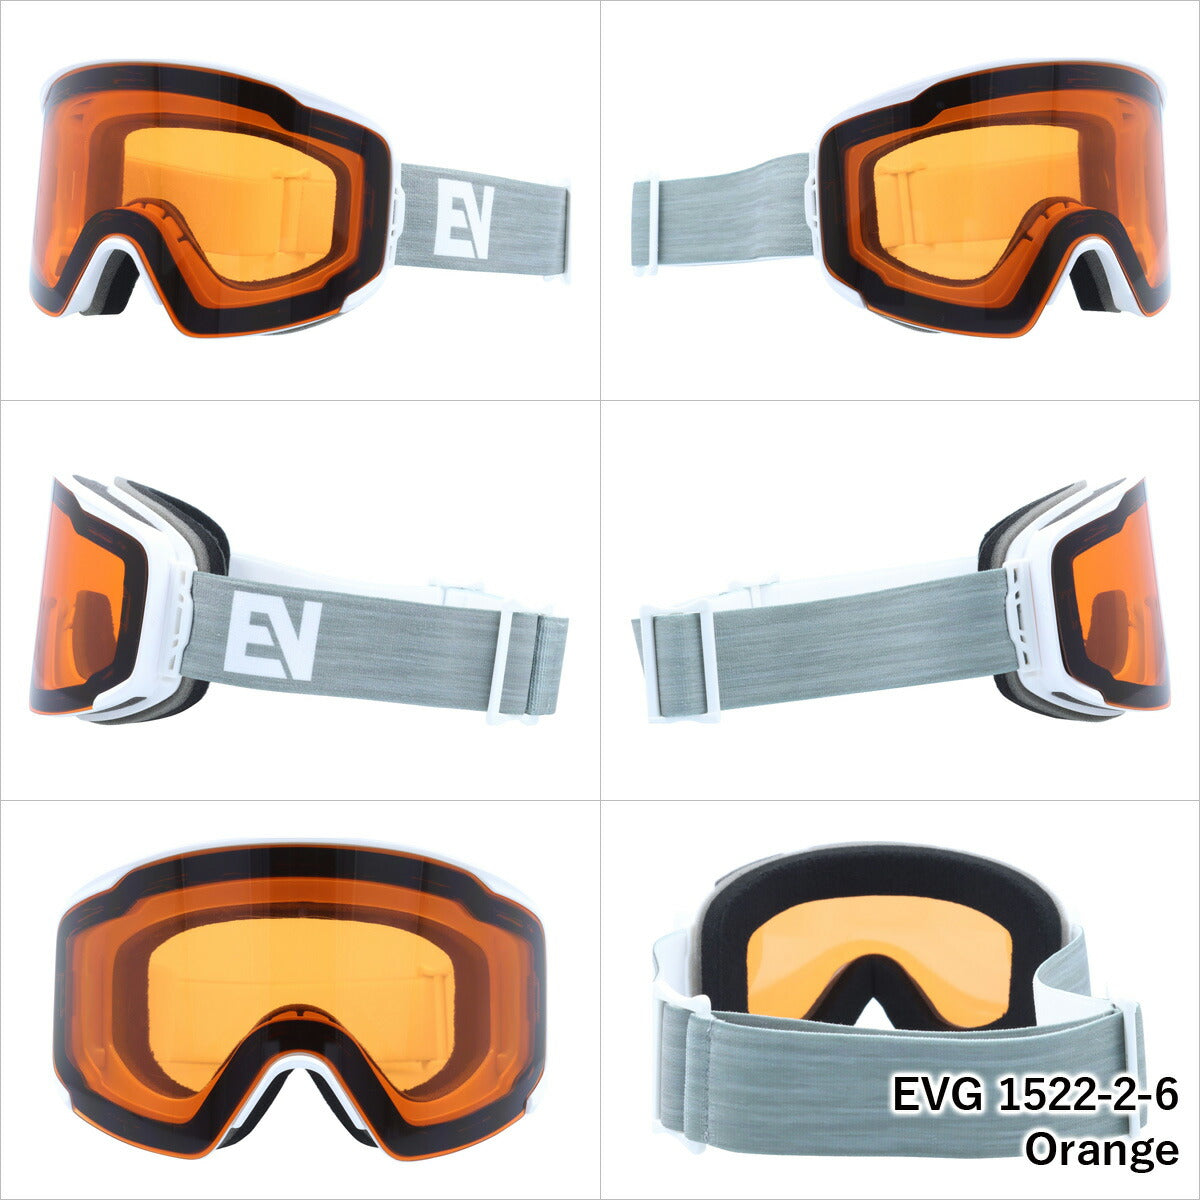 スノー ゴーグル マグネット式 ヘルメット対応 ミラーレンズ 磁石 レンズ脱着 スキー スノーボード スノボ 平面ダブルレンズ フレームあり メンズ レディース ウィンタースポーツ 曇り防止 曇り止め 誕生日 プレゼント EVOLVE イヴァルブ EVG 1522 男性 女性